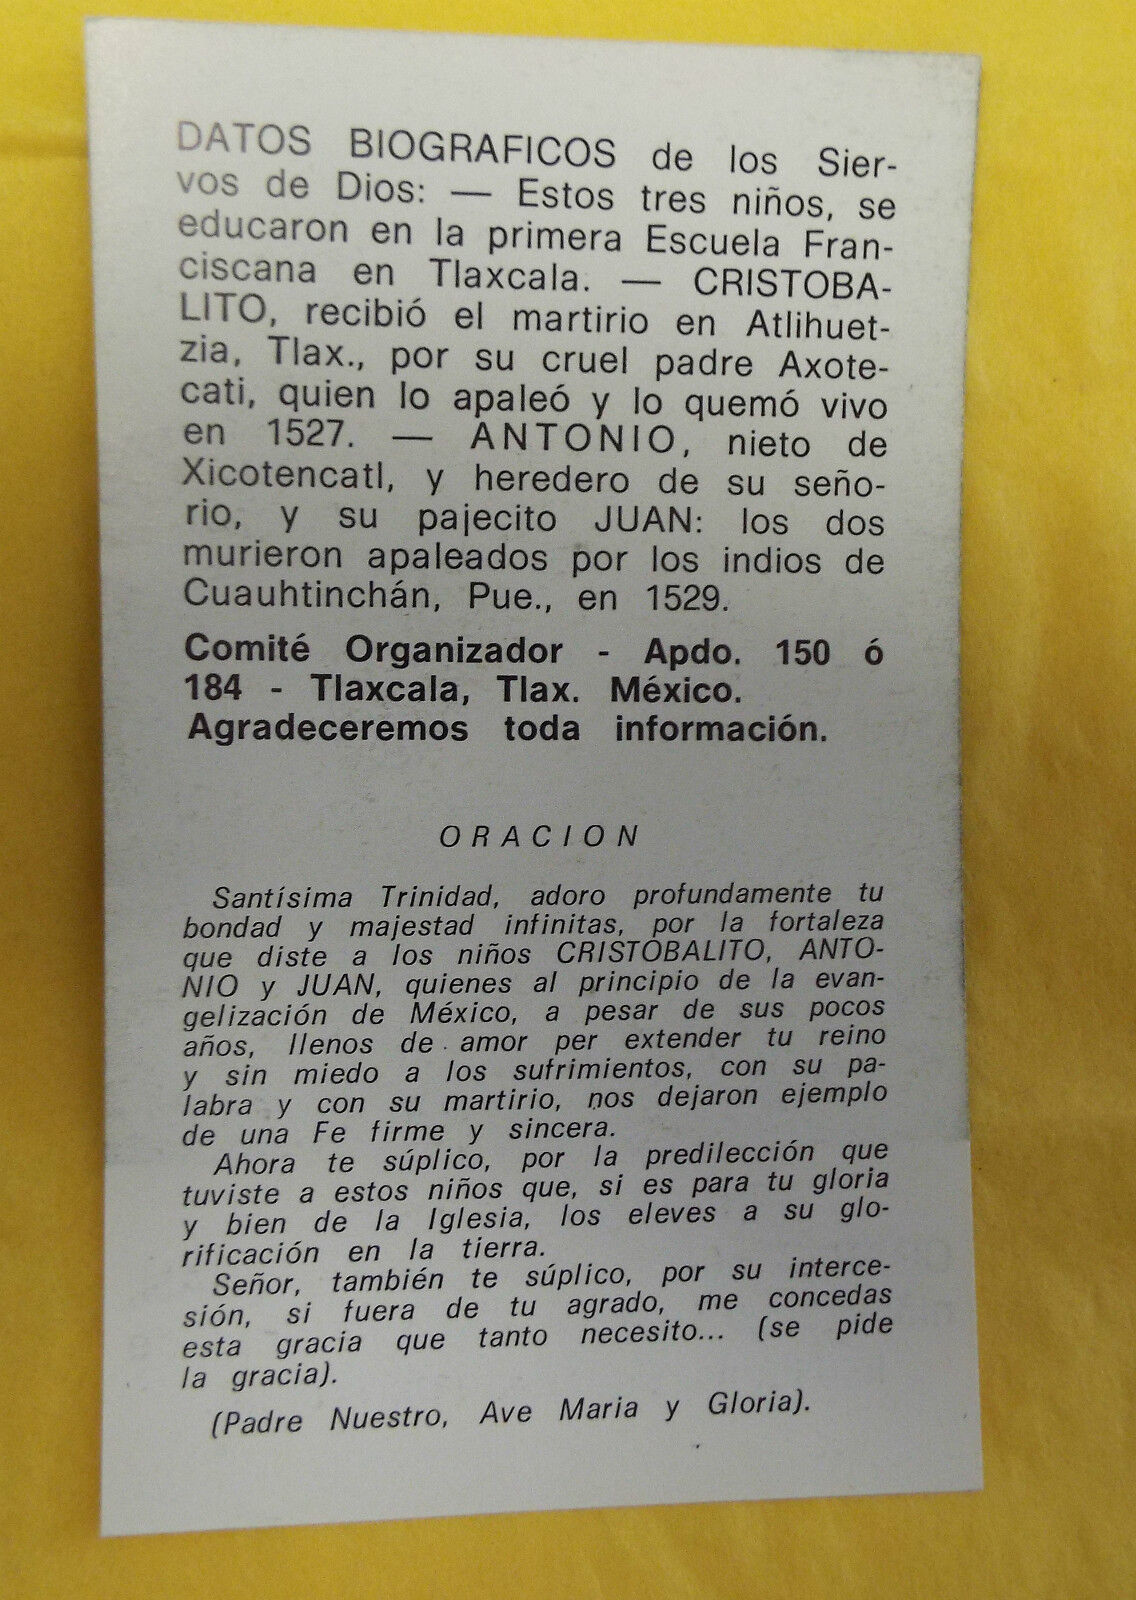 Cristobalito, Antonio & Juan Siervos de Dios, Prayer Card/Estampa en  Español